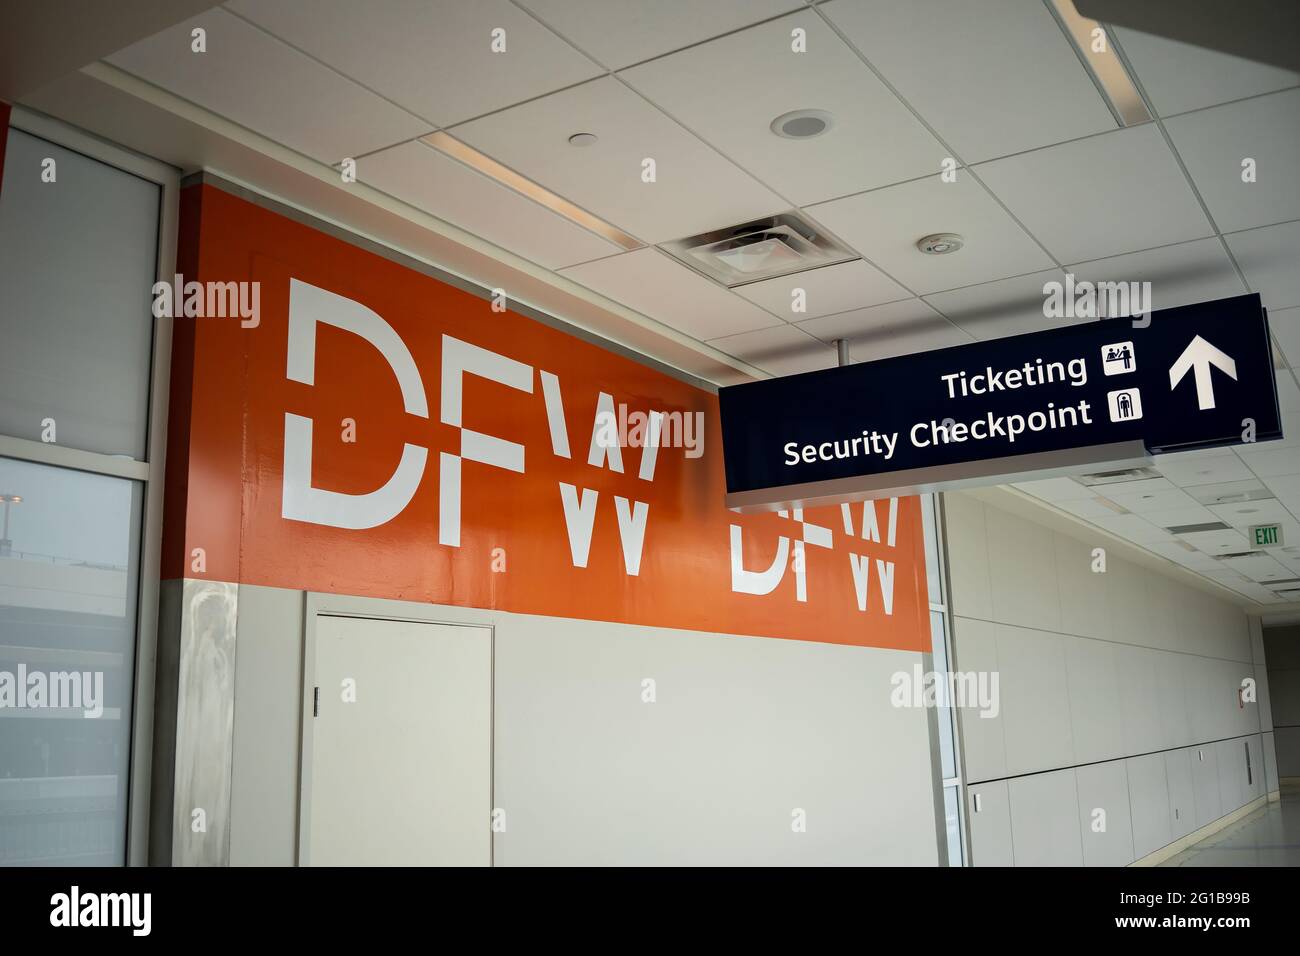 Signez avec d'énormes lettres à l'aéroport international DFW de Dallas, Texas, indiquant la direction du point de contrôle de sécurité et l'émission de billets sur le terminal A. Banque D'Images